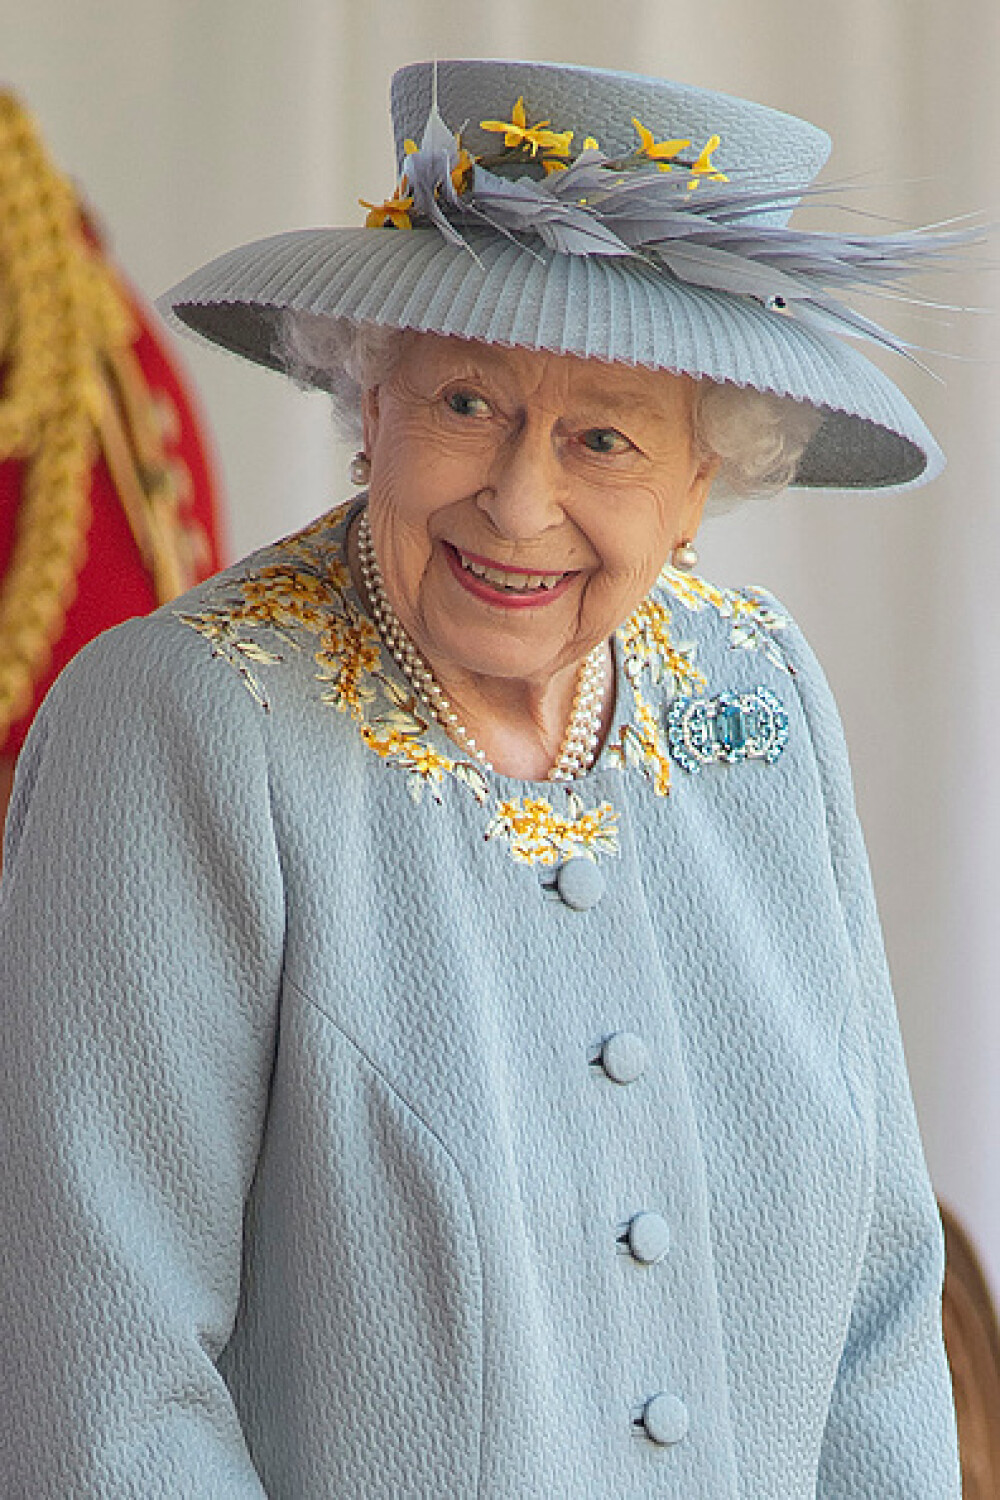 Paradă militară la Windsor. A fost celebrată oficial ziua de naştere a reginei Elisabeta a II-a - Imaginea 3